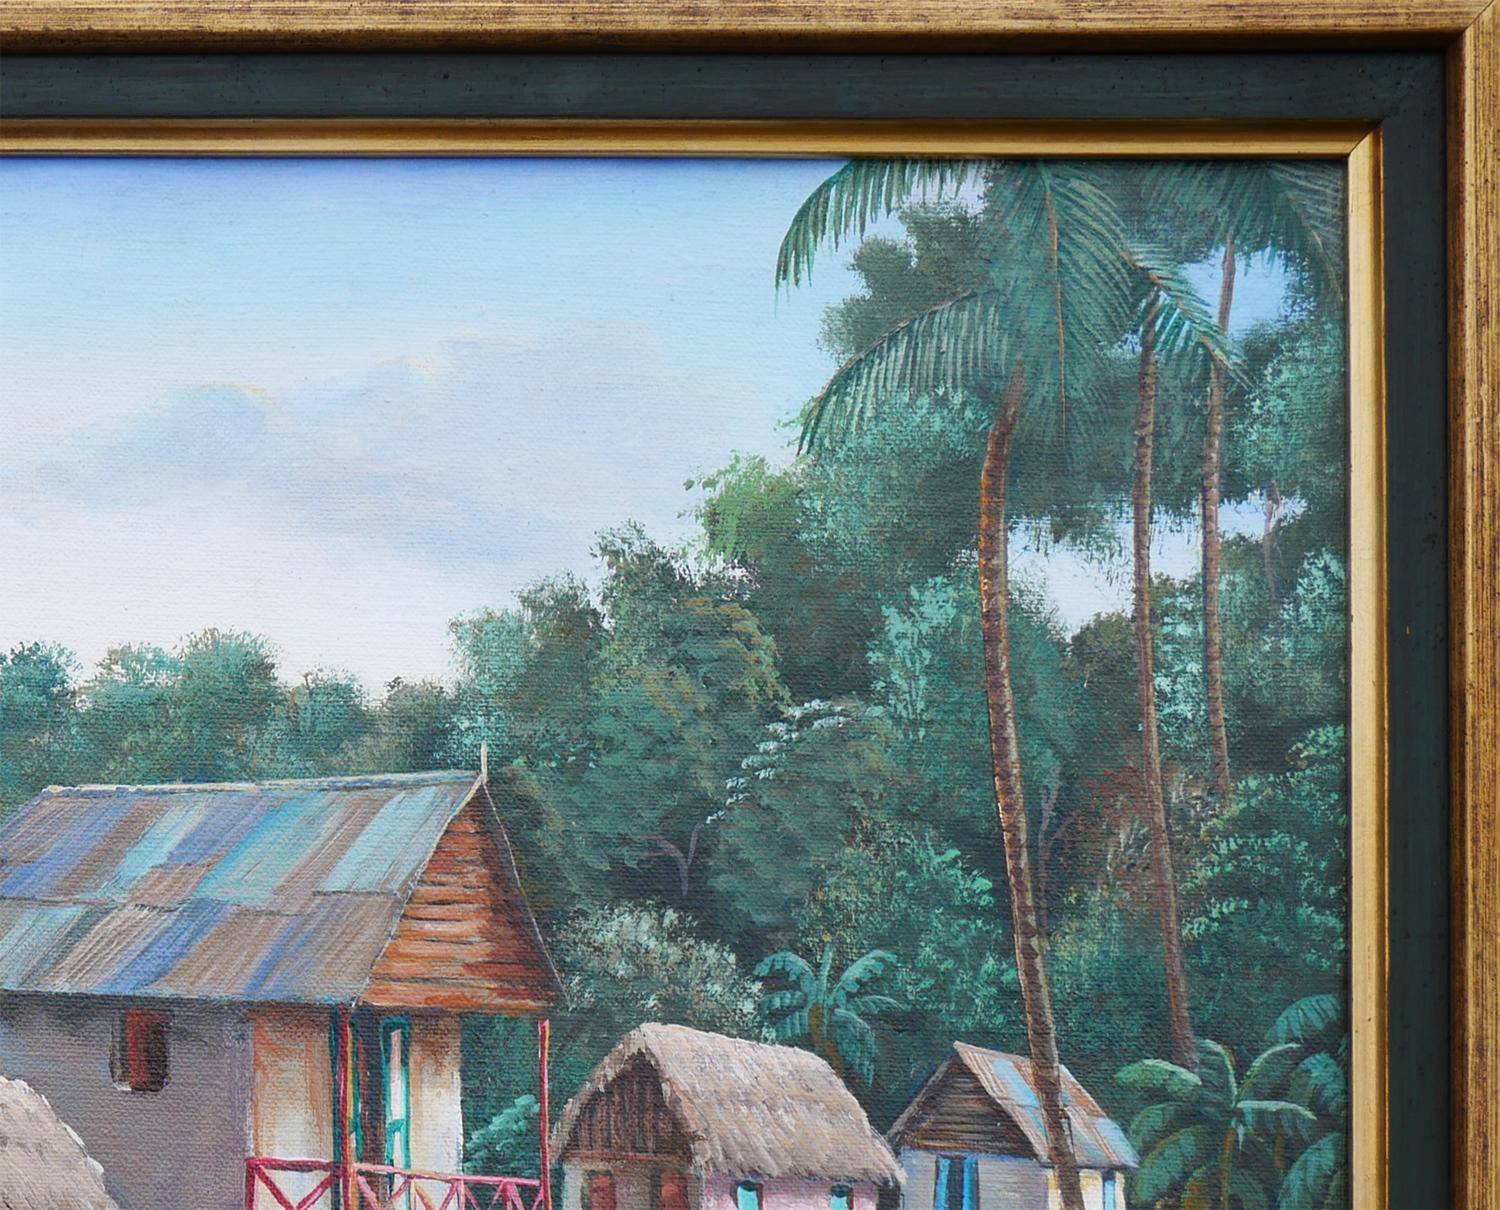 Peinture réaliste moderne de paysage de la vie quotidienne par l'artiste haïtien Felix Defournoy. L'œuvre représente un marché rural animé où des vendeurs proposent leurs produits dans un paysage tropical dense et luxuriant. Signé par l'artiste dans